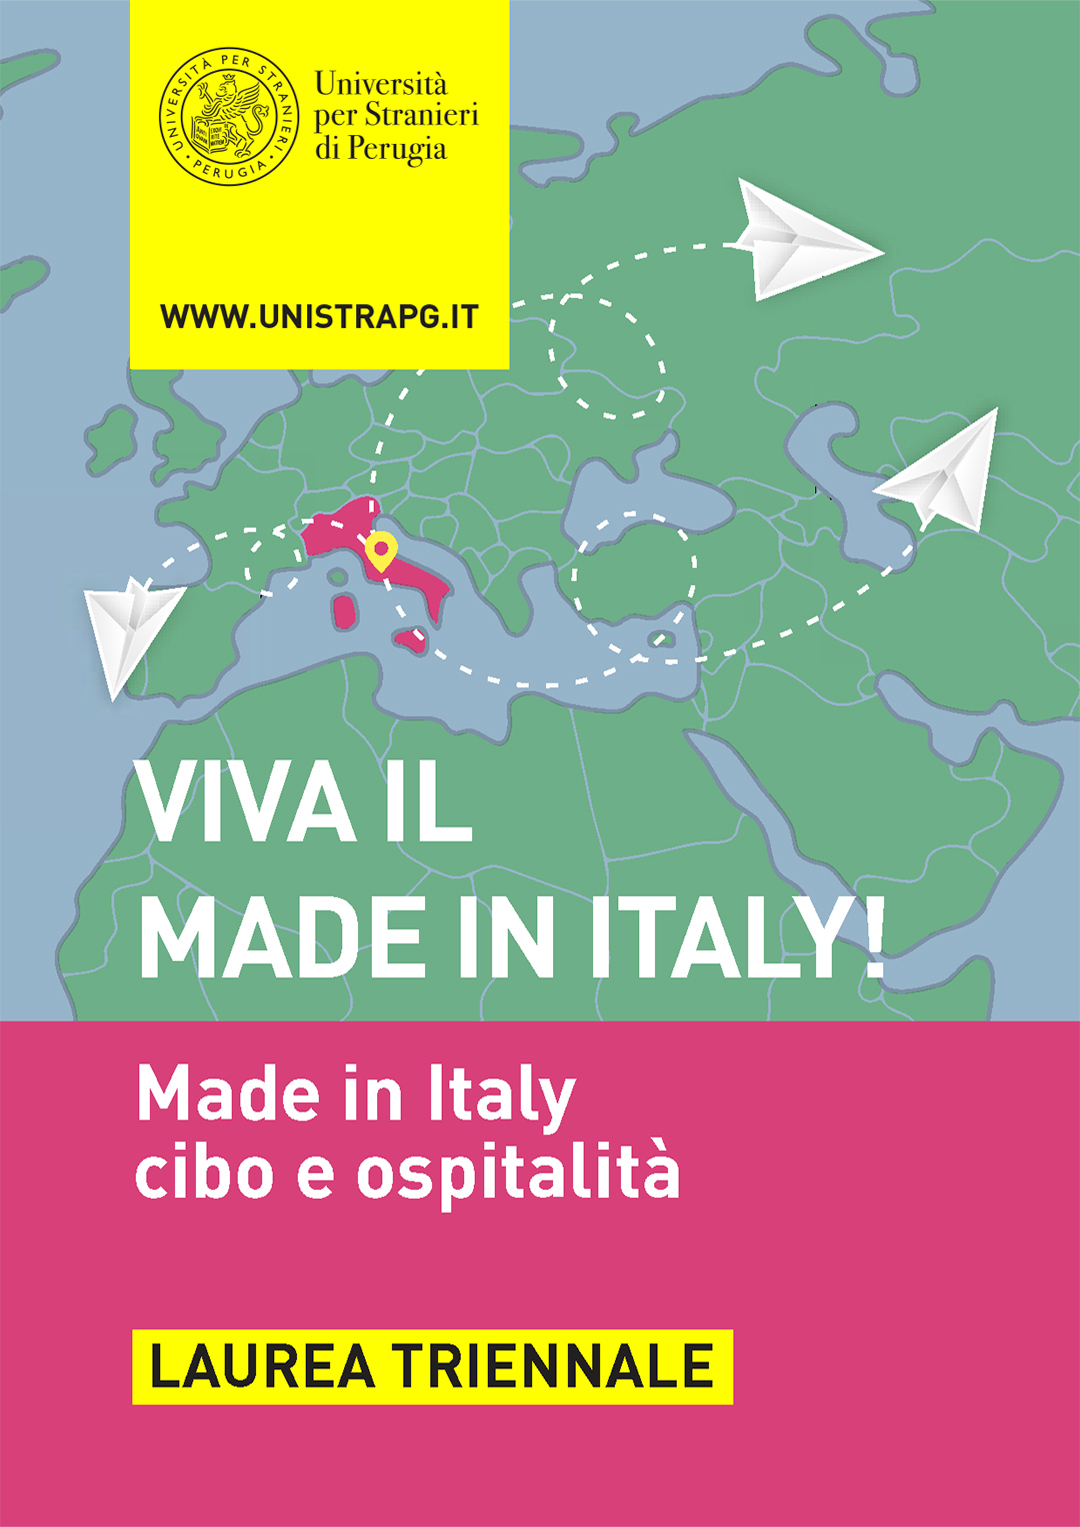 Corso di laurea in Made in Italy, cibo e ospitalità